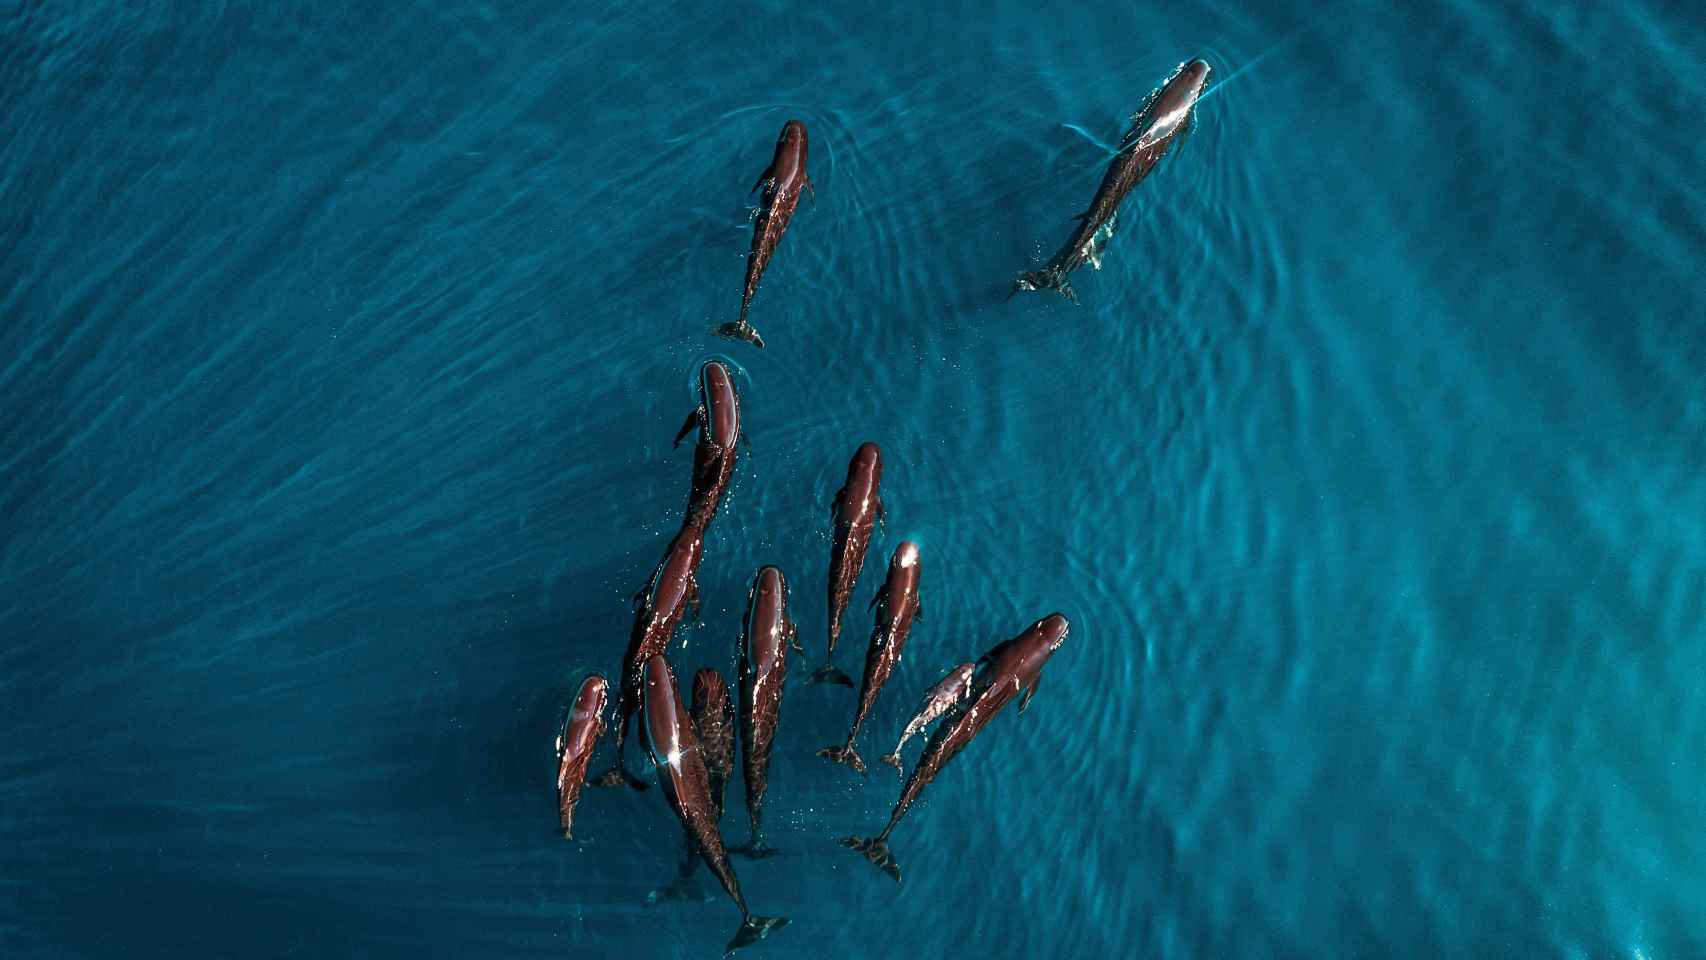 Divisan un centenar de delfines calderón negro en la Costa Brava.